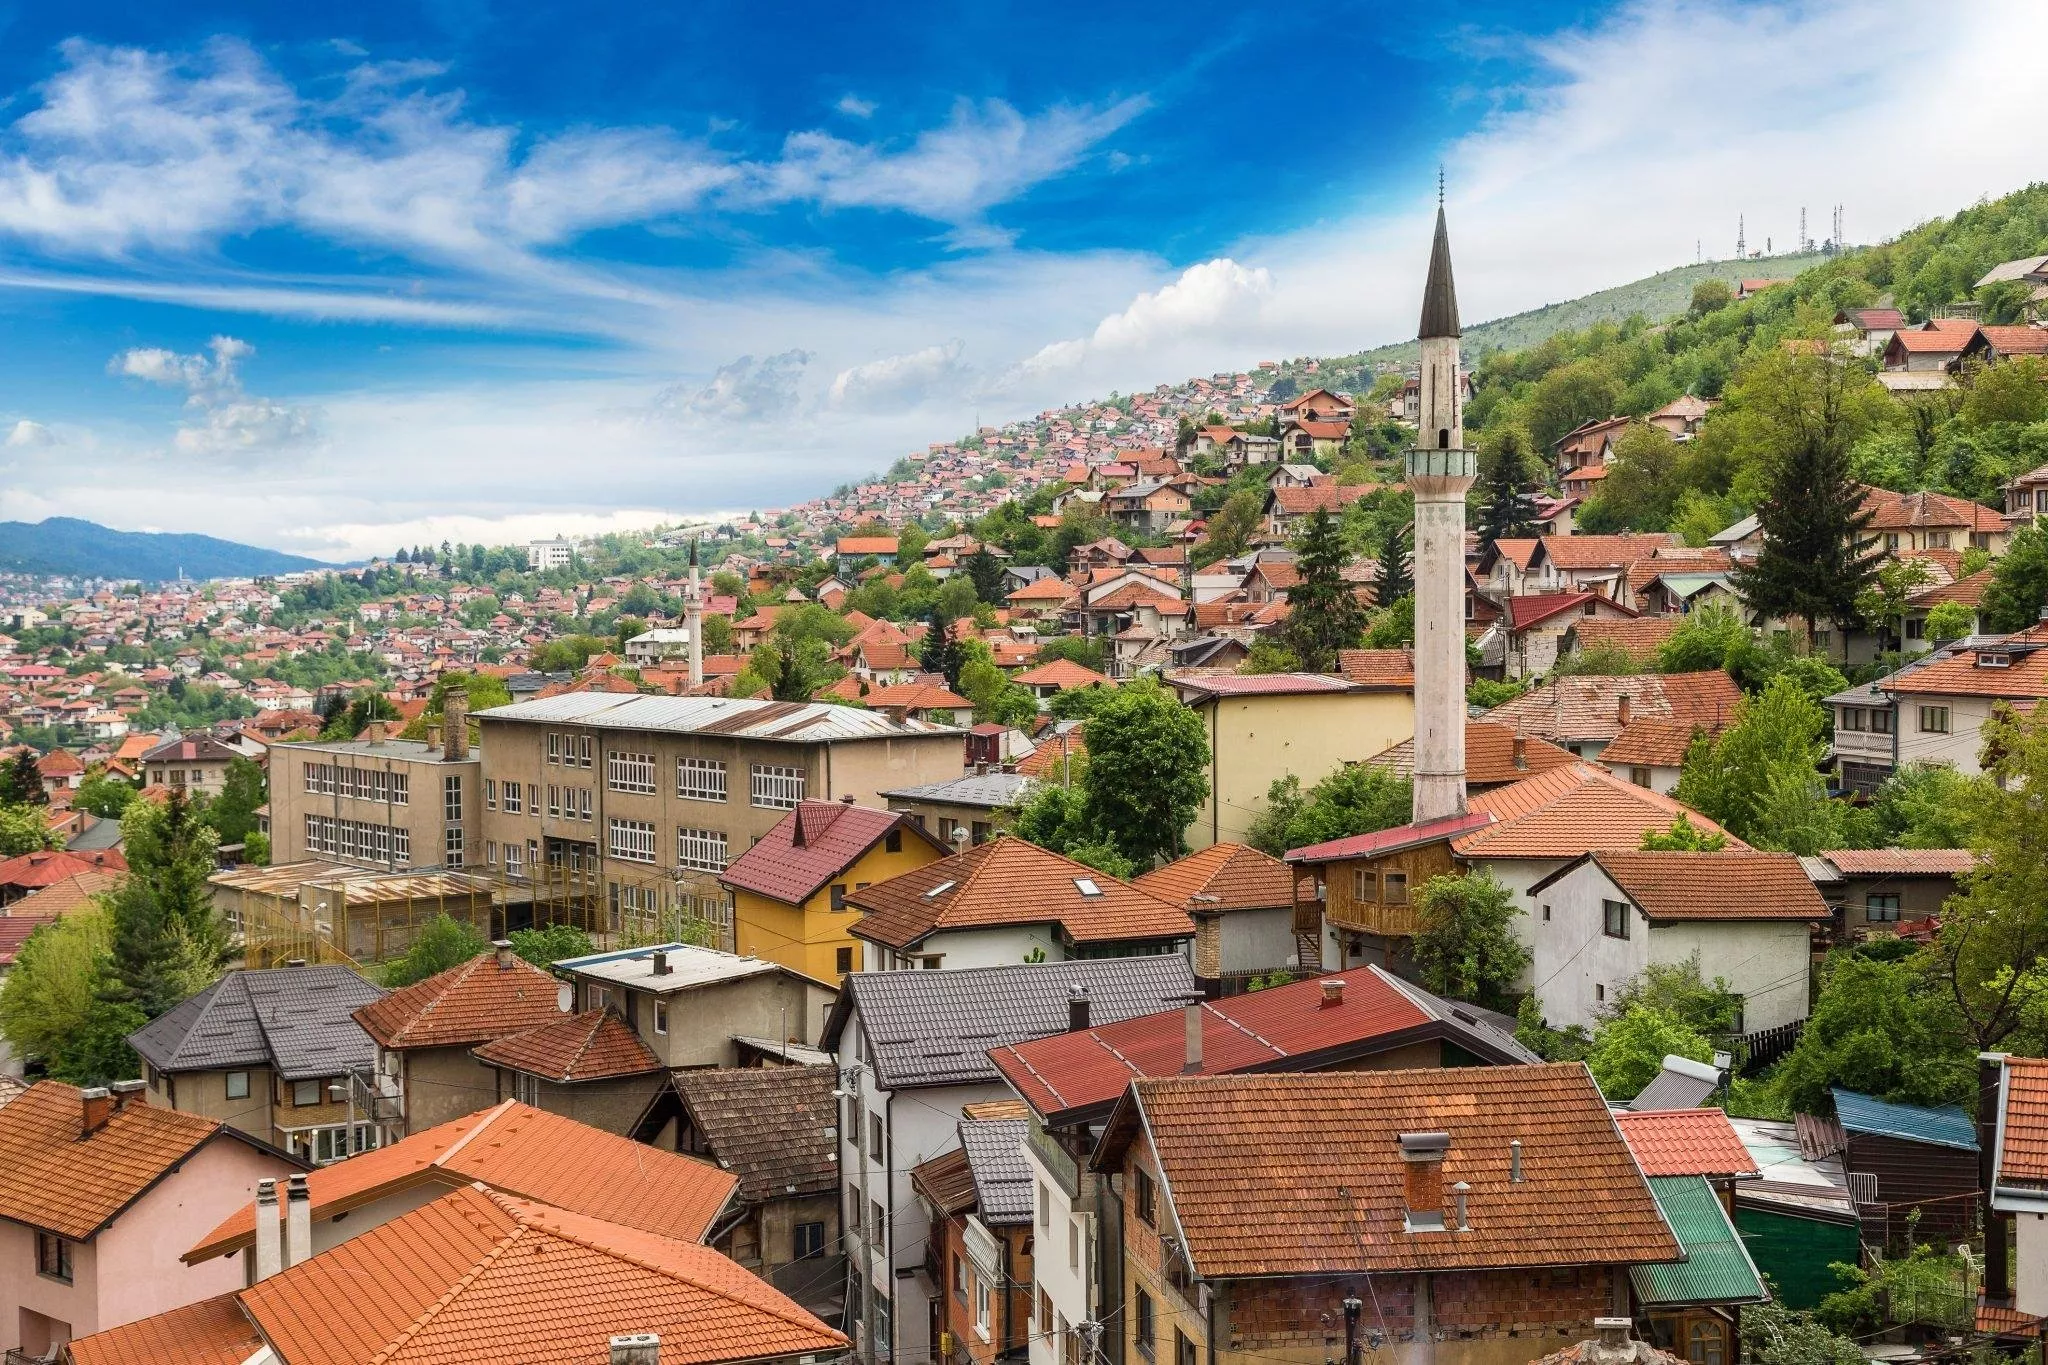 اماكن سياحية   سياحة   سفر   السياحة في البوسنة   البوسنة تكلفة السياحة في البوسنة والهرسك